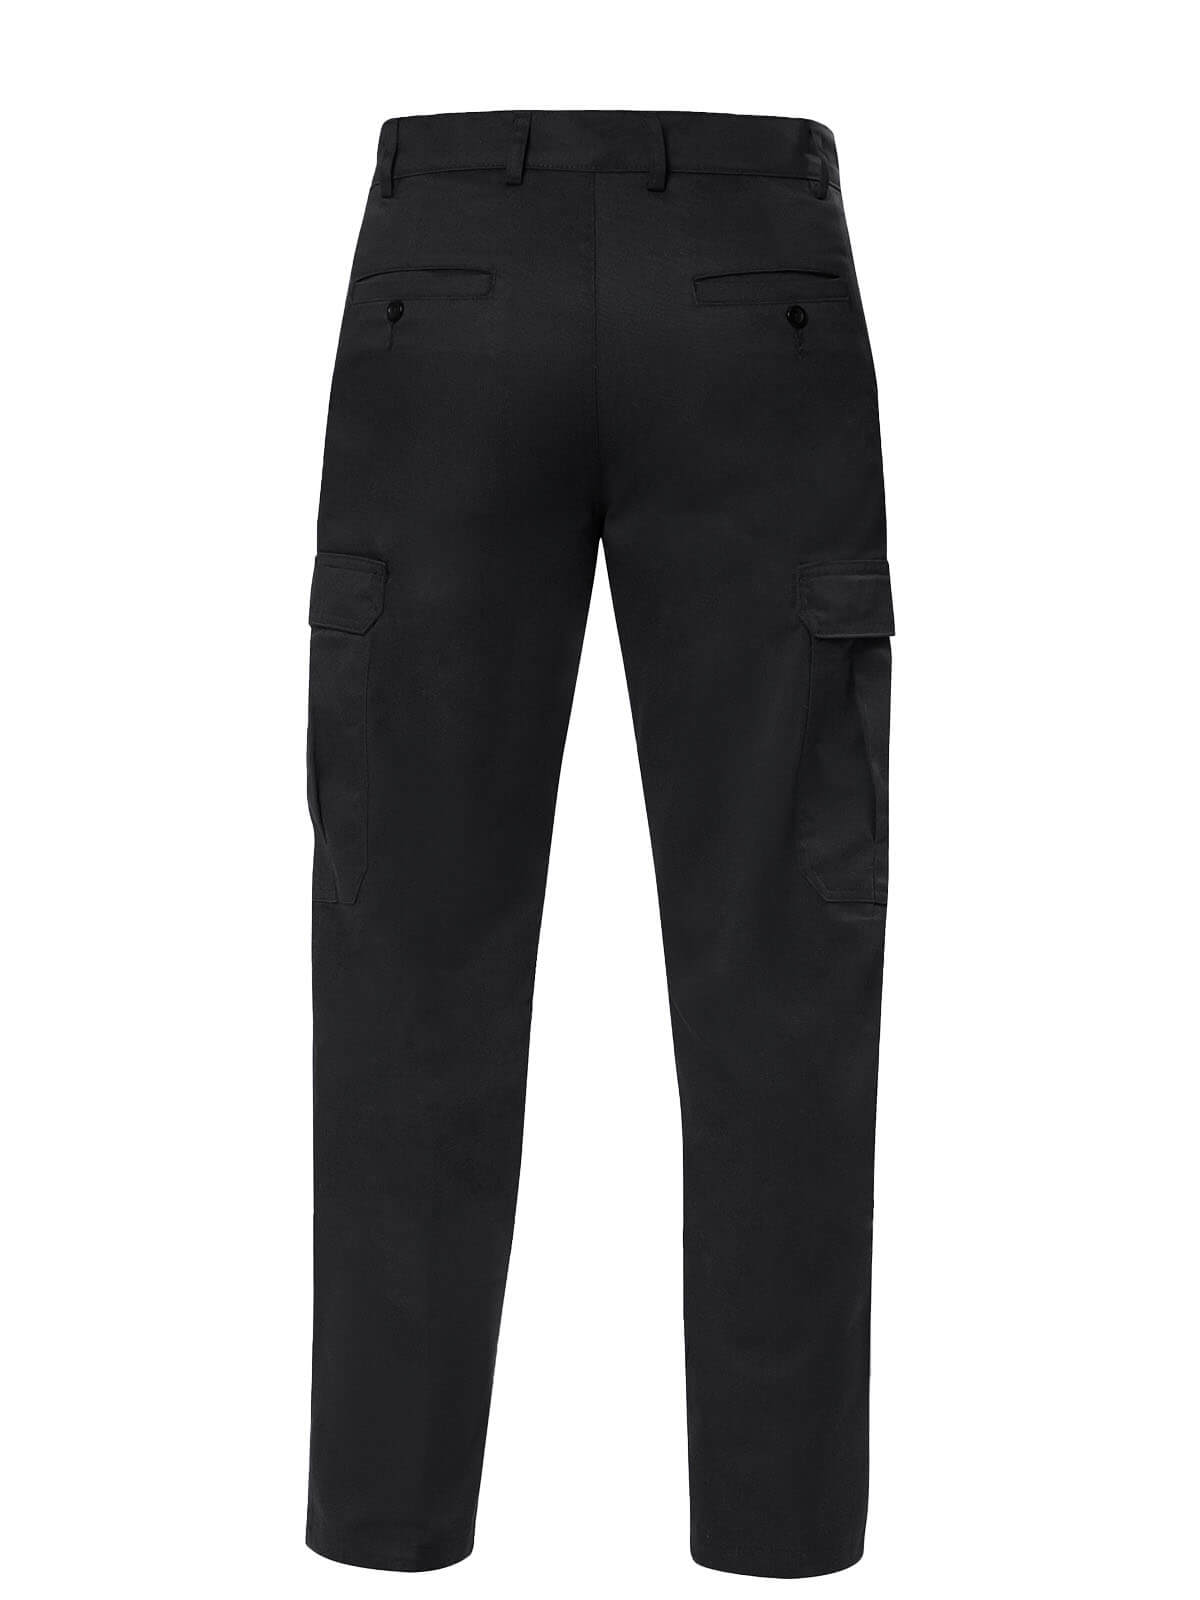 Pantalon tipo Cargo color negro